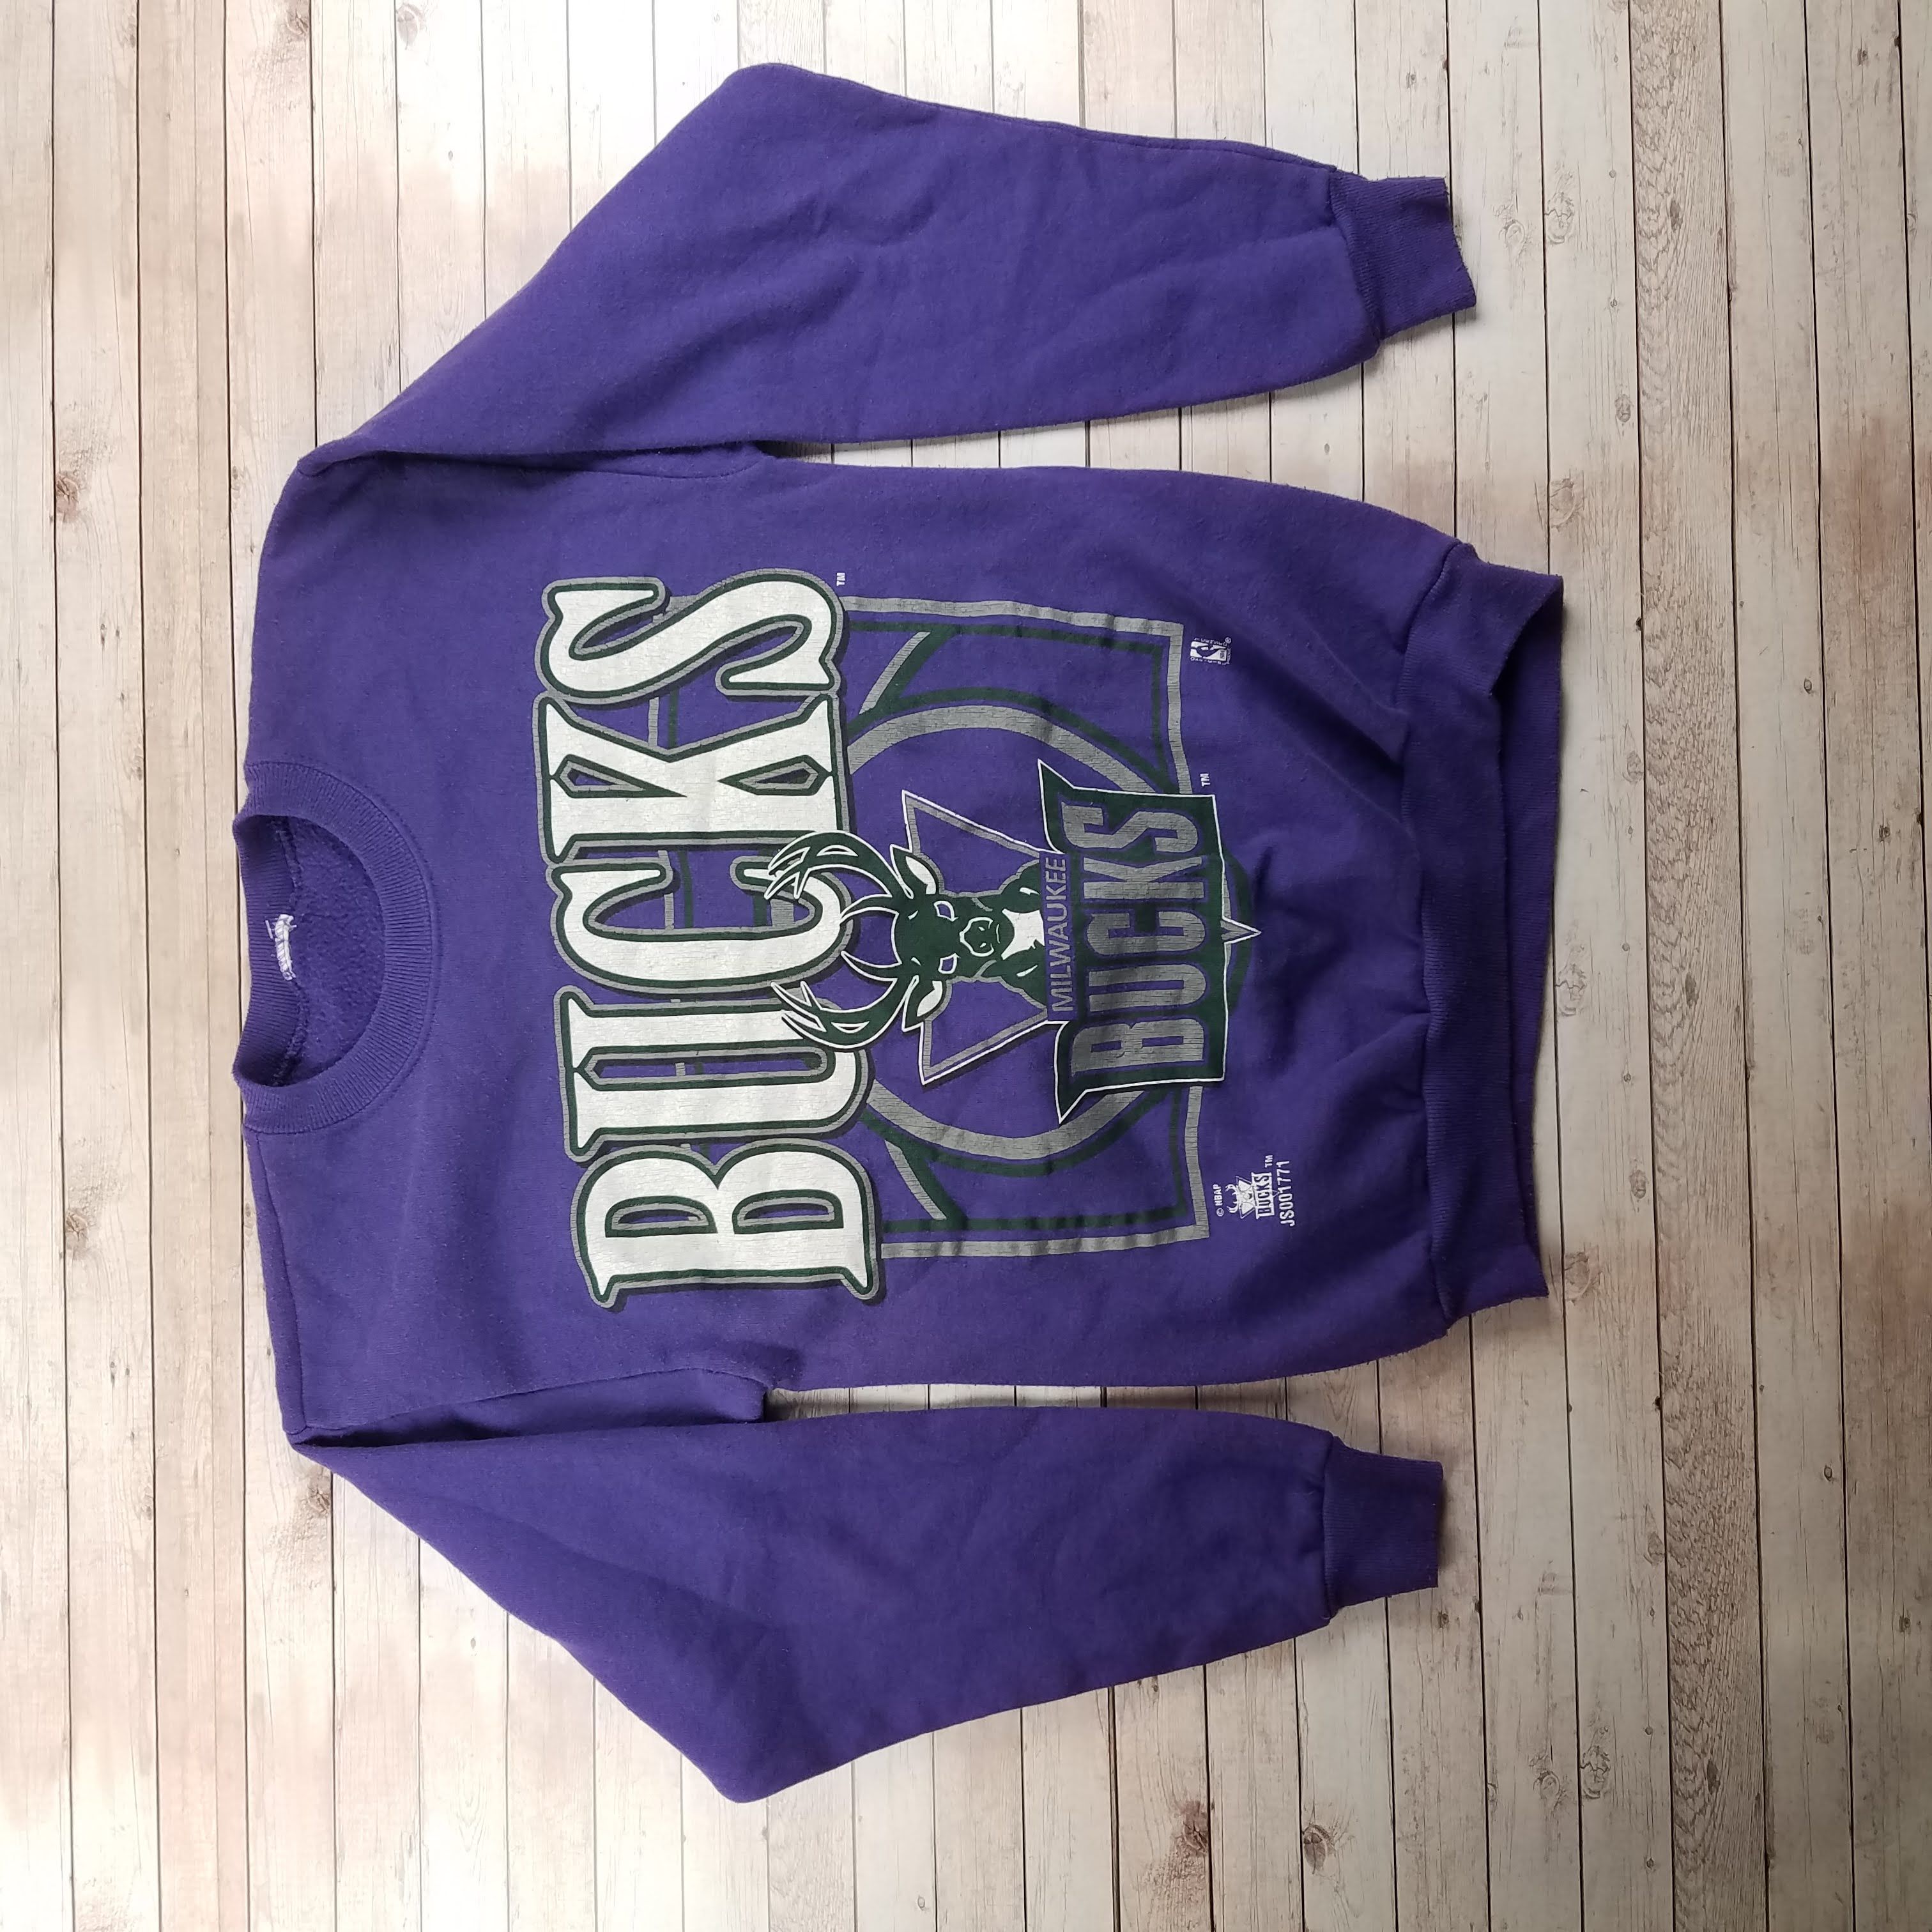 Vintage Milwaukee Bucks Sweatshirt (1990s)